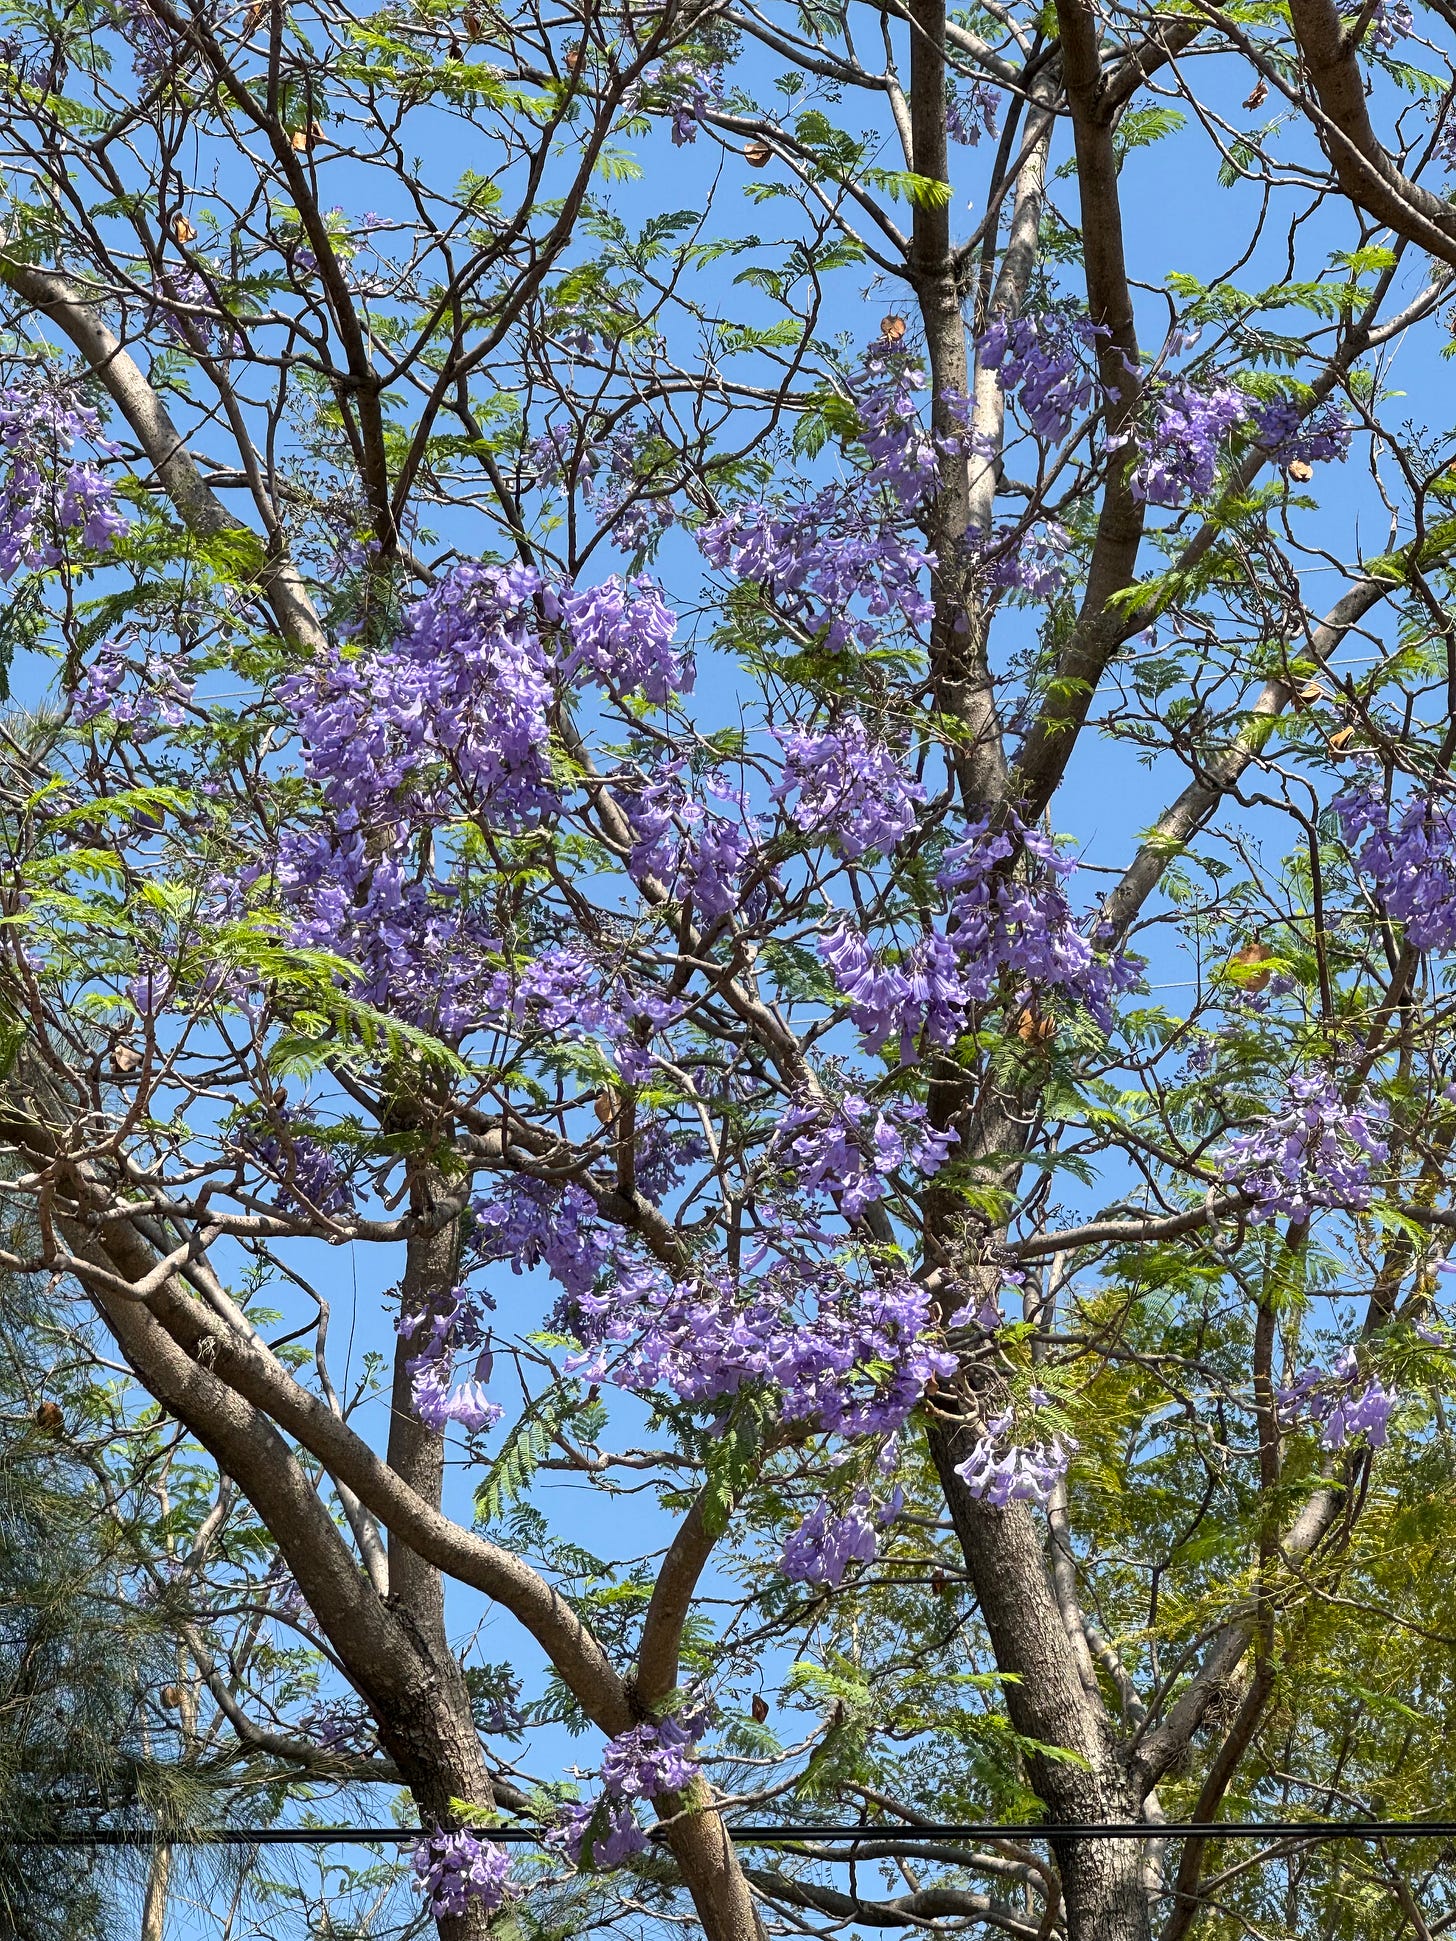 A close-up shot of a blossoming jacaranda tree.